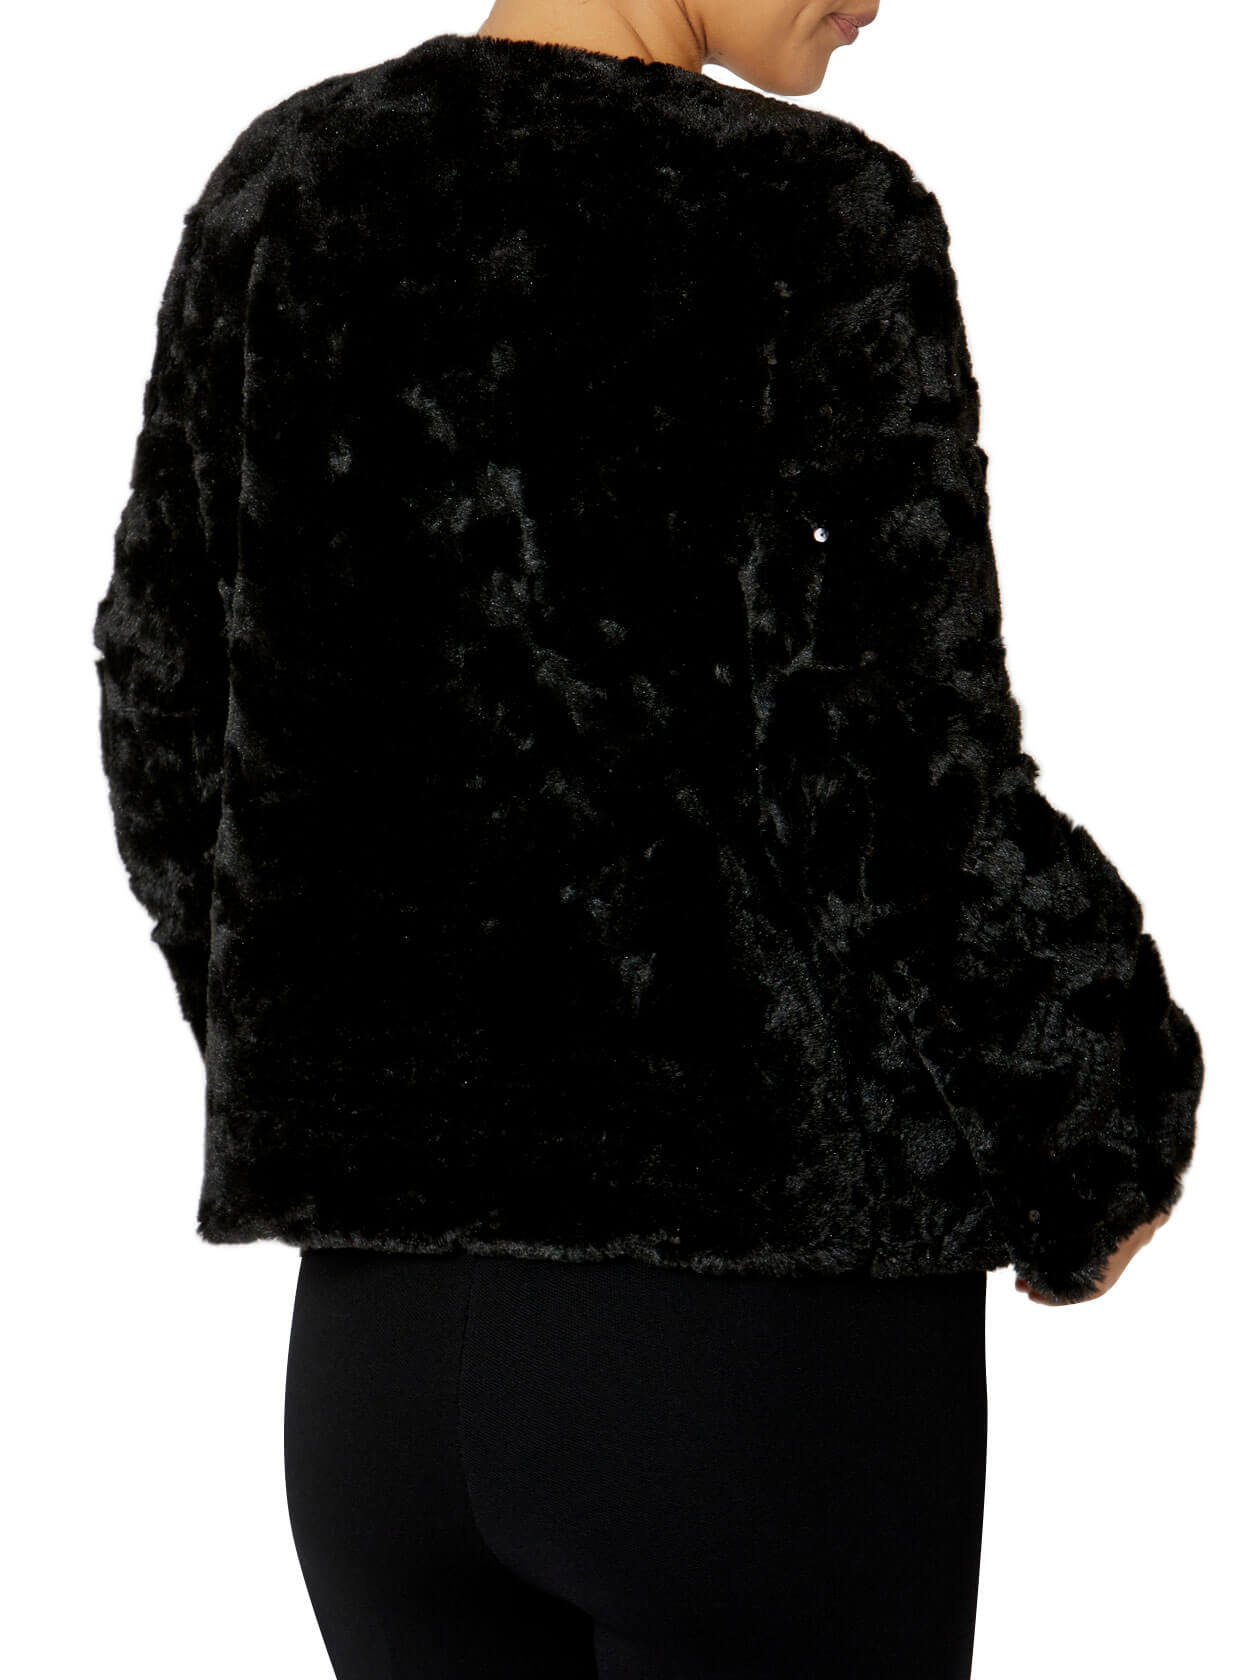 Estelle Black Faux Fur Jacket